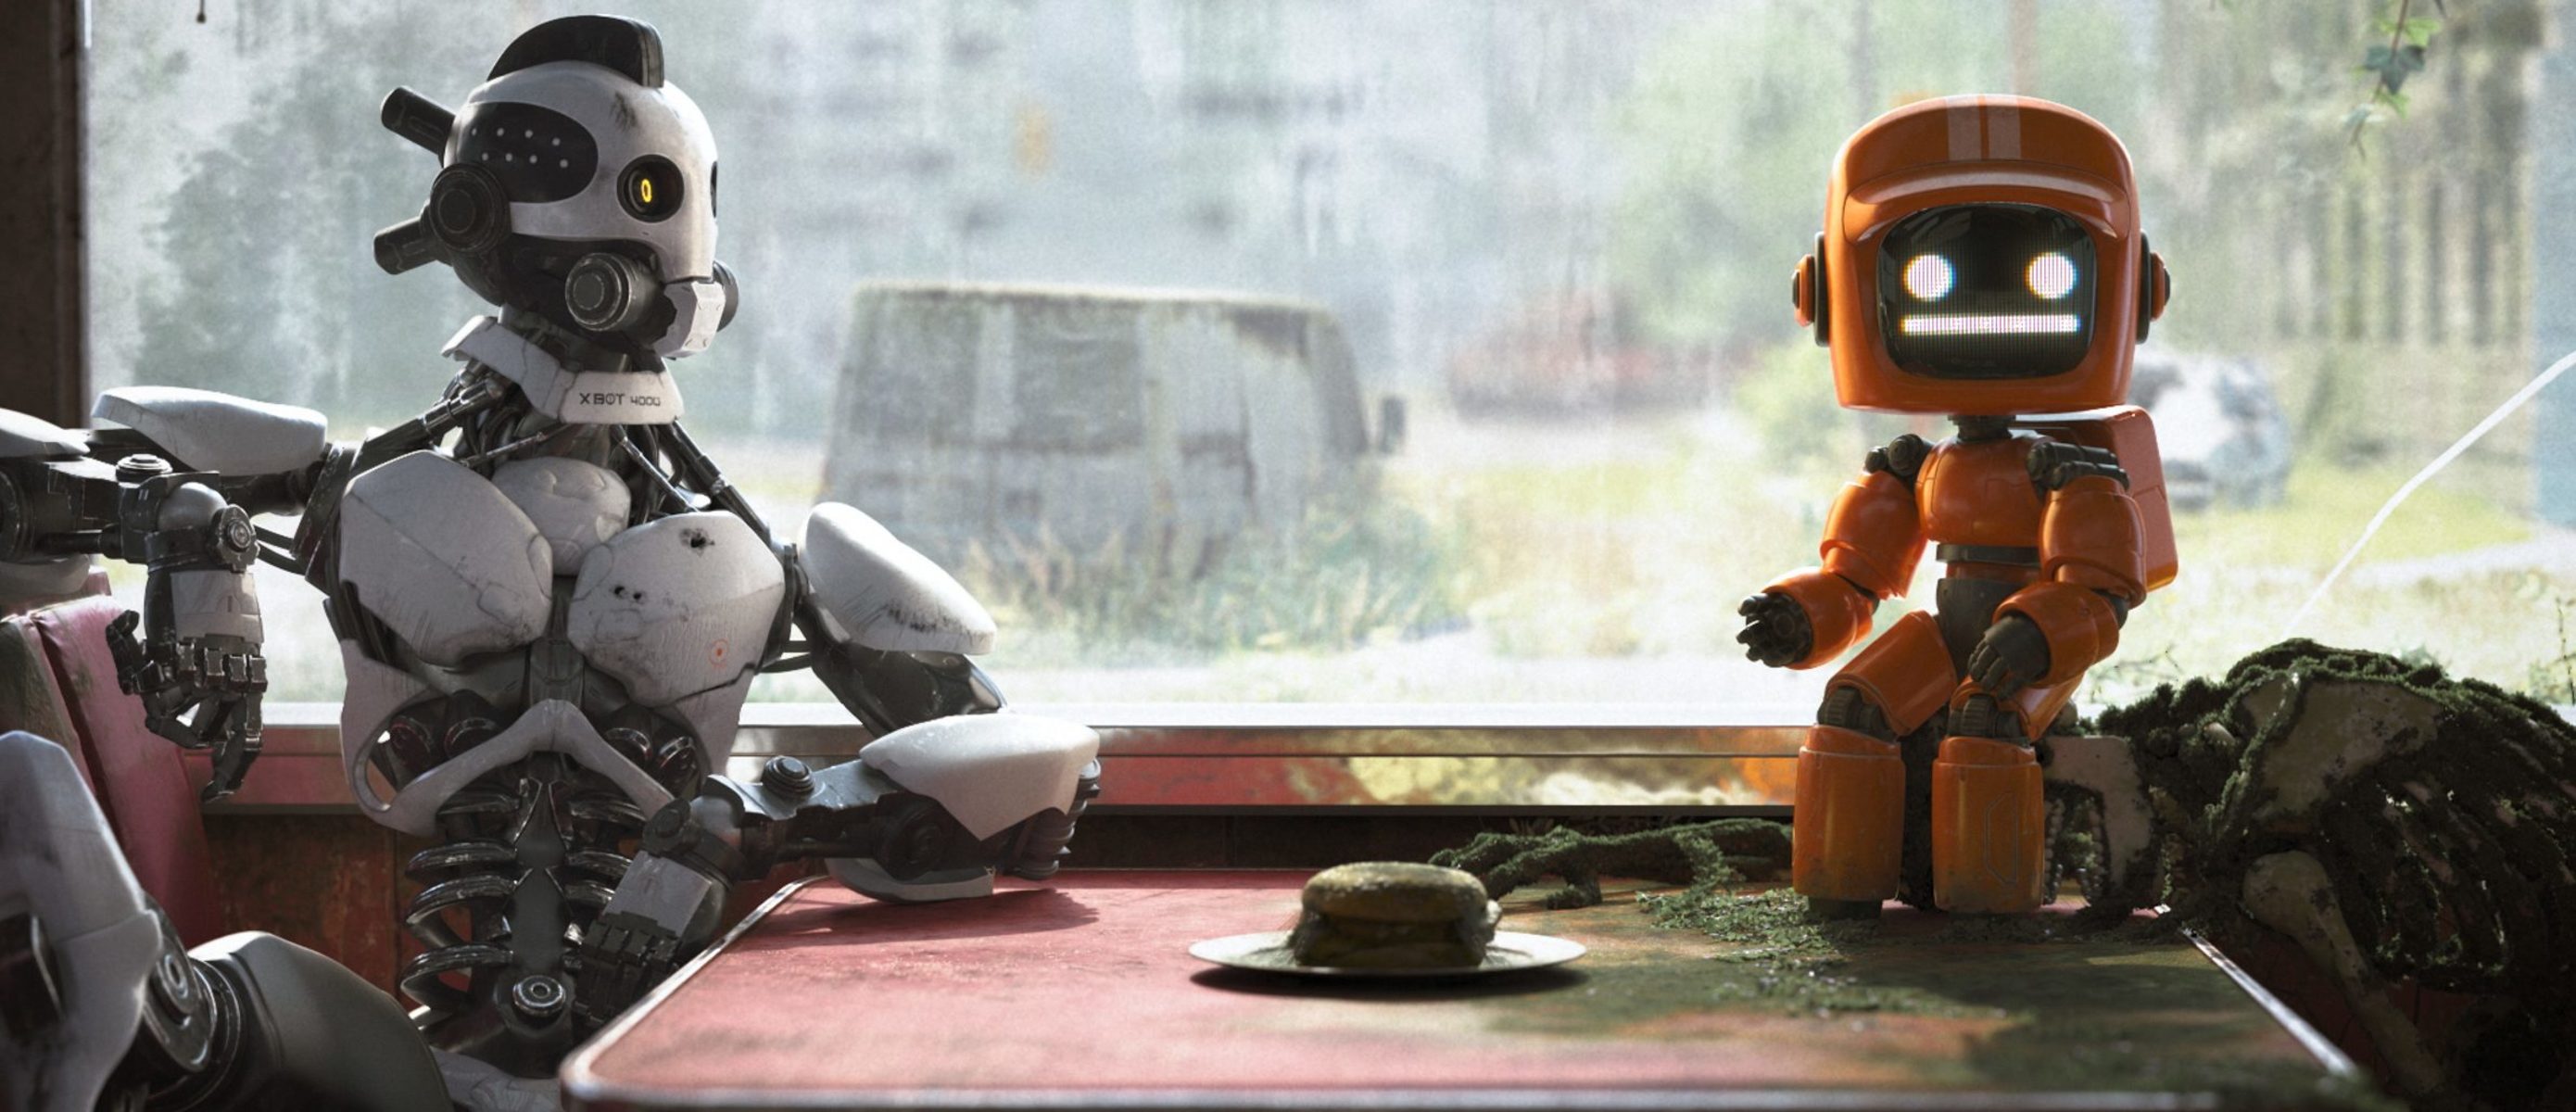 Видео любовь роботы. Оранжевый робот. Оранжевый робот Love Death and Robots. Оранжевый робот из любовь смерть и роботы. Я робот Нетфликс.